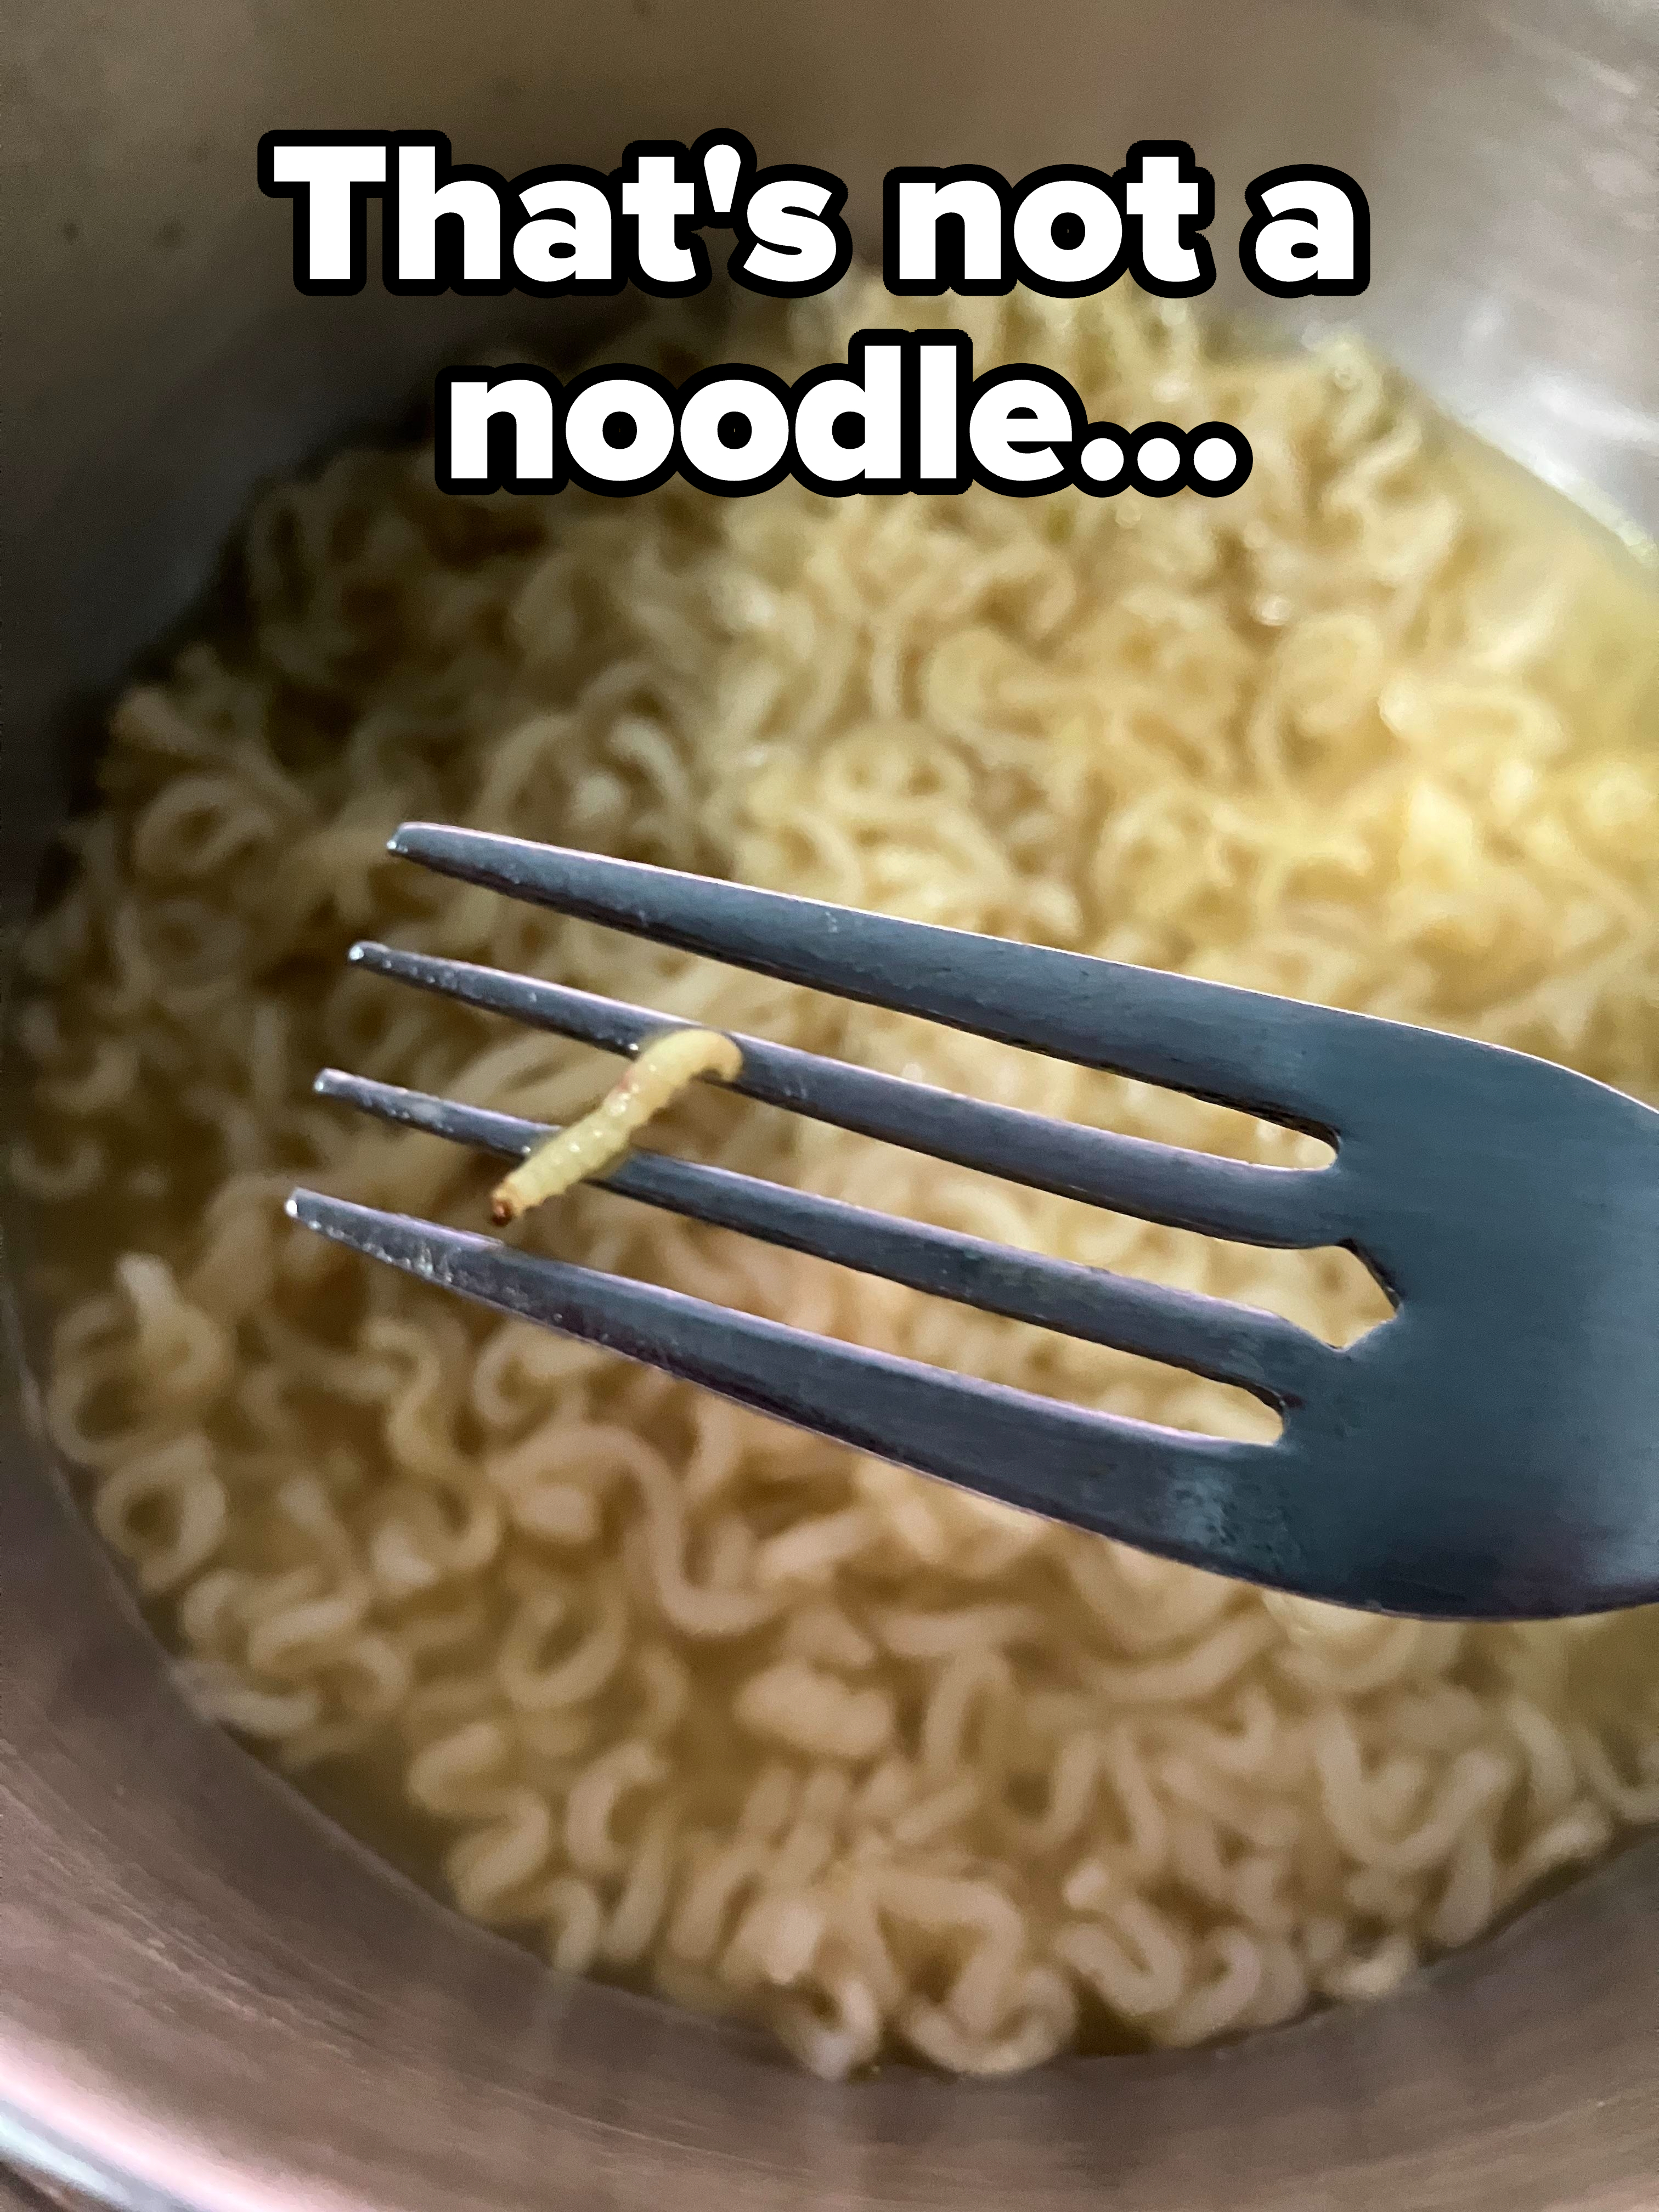 &quot;That&#x27;s not a noodle...&quot;